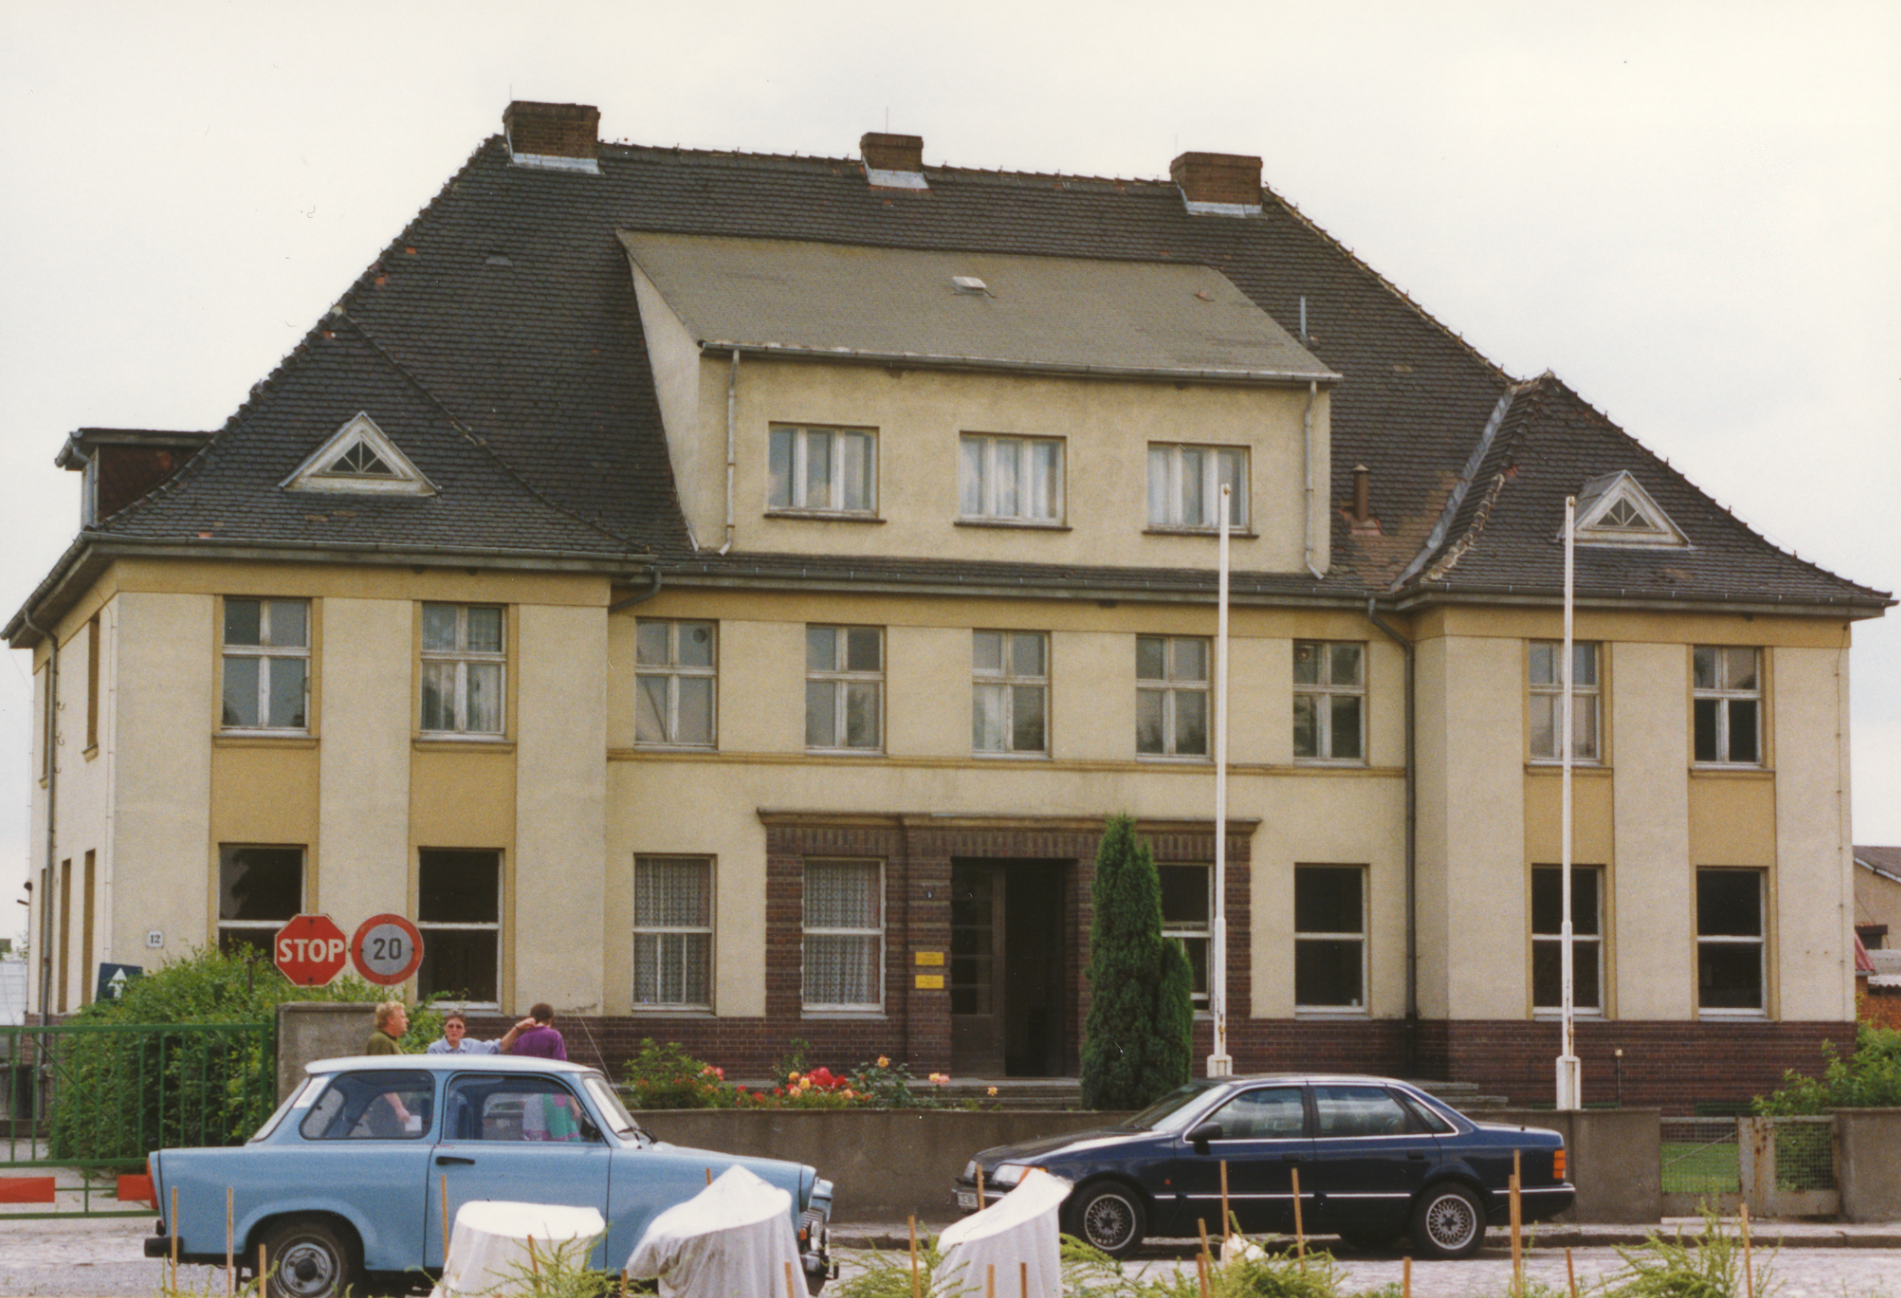 Klein Wanzleben 的植物育种研究所（成立于 1930 年），今天是育种站的行政大楼